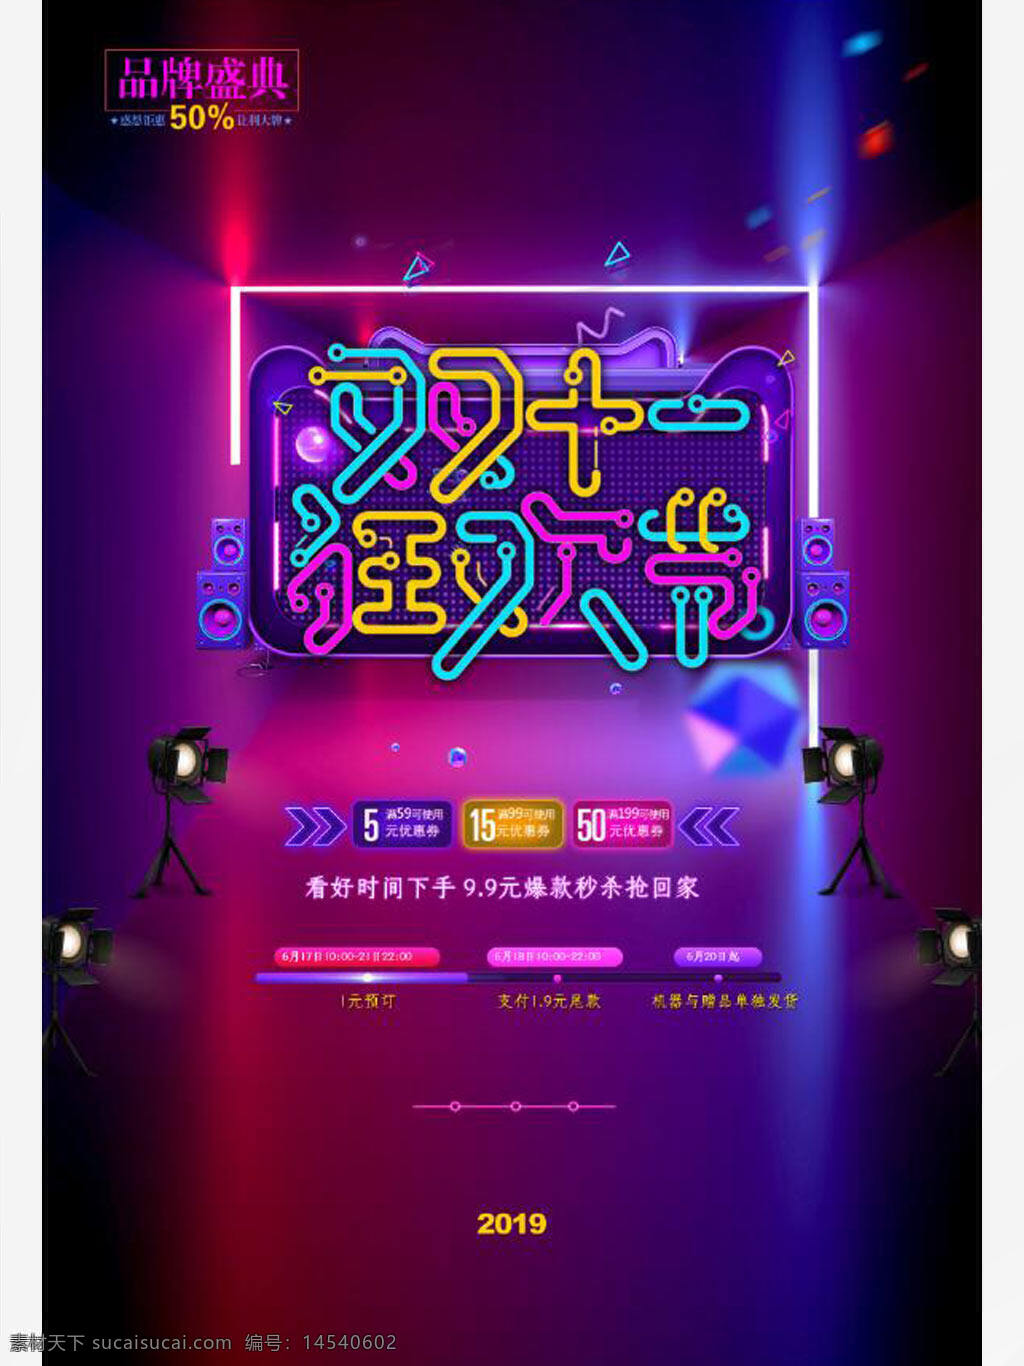 酷炫双十一狂欢节双十一促销海报 酷炫 双十一 狂欢节 双十一促销海报